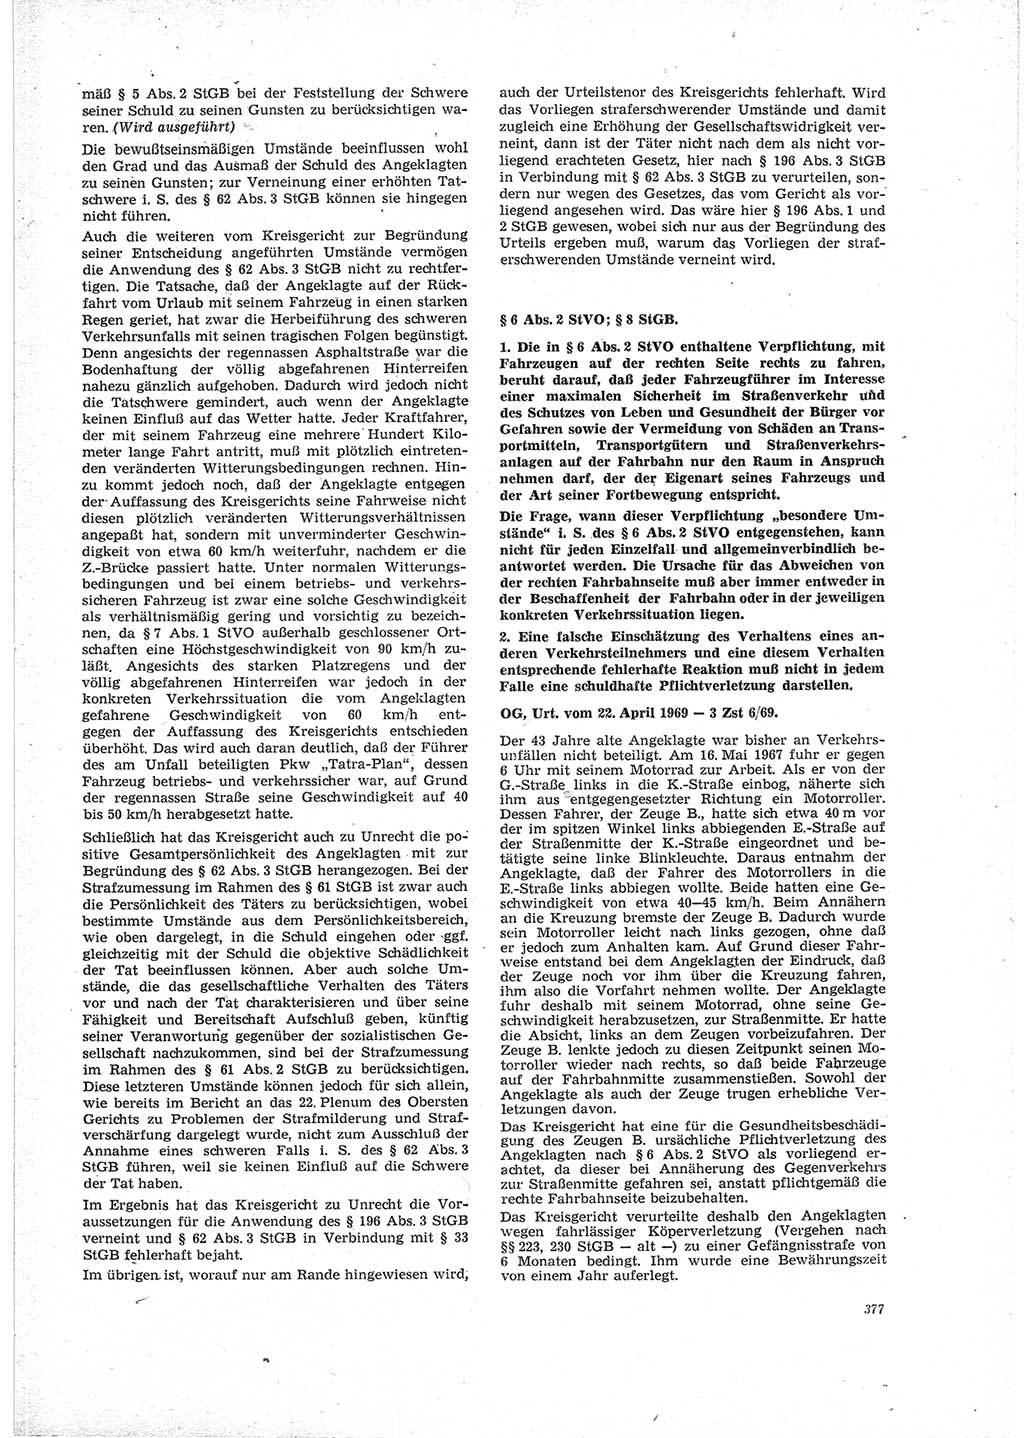 Neue Justiz (NJ), Zeitschrift für Recht und Rechtswissenschaft [Deutsche Demokratische Republik (DDR)], 23. Jahrgang 1969, Seite 377 (NJ DDR 1969, S. 377)